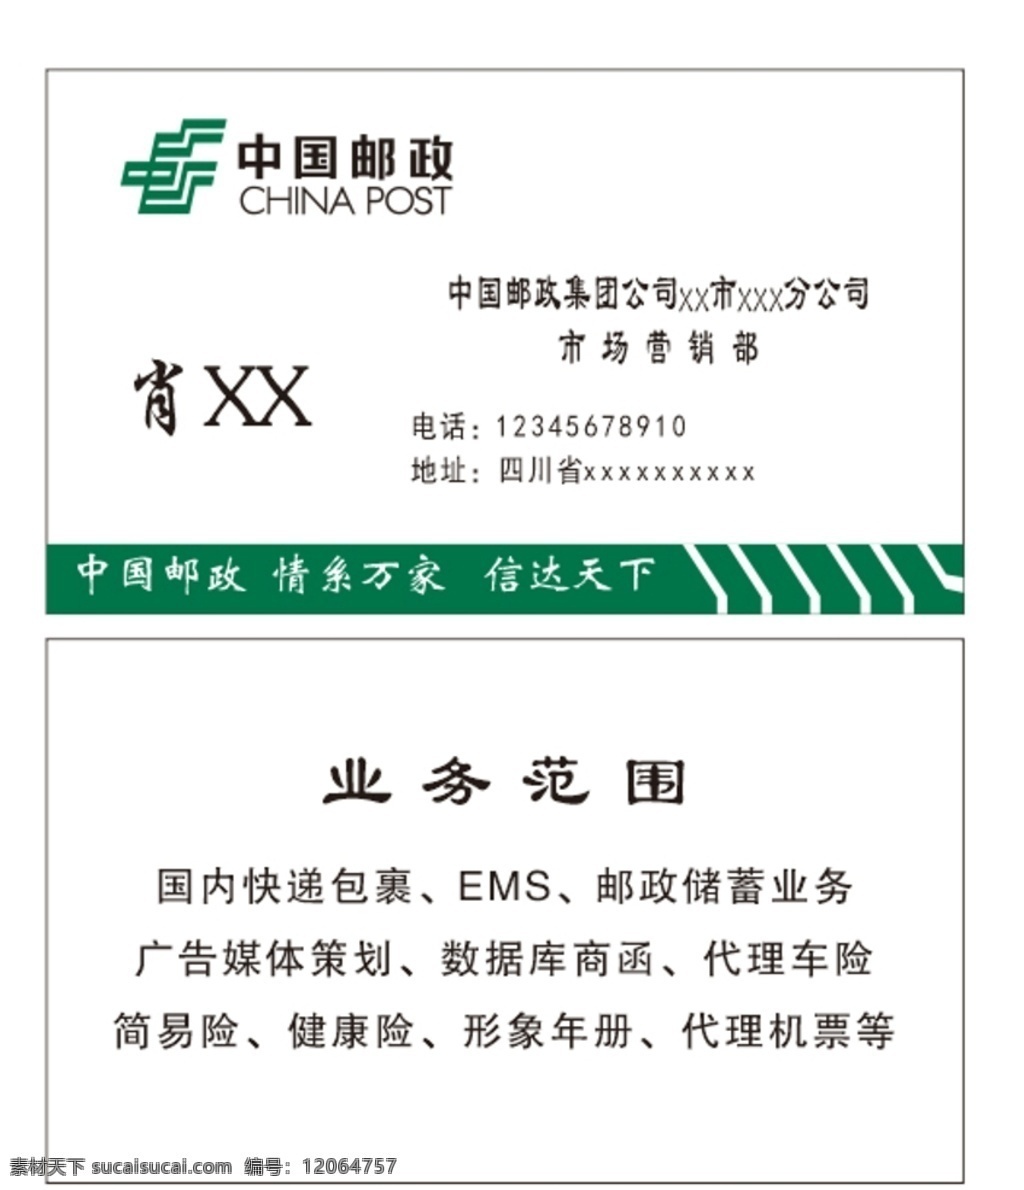 邮政名片图片 邮政 名片 绿色 业务范围 中国邮政